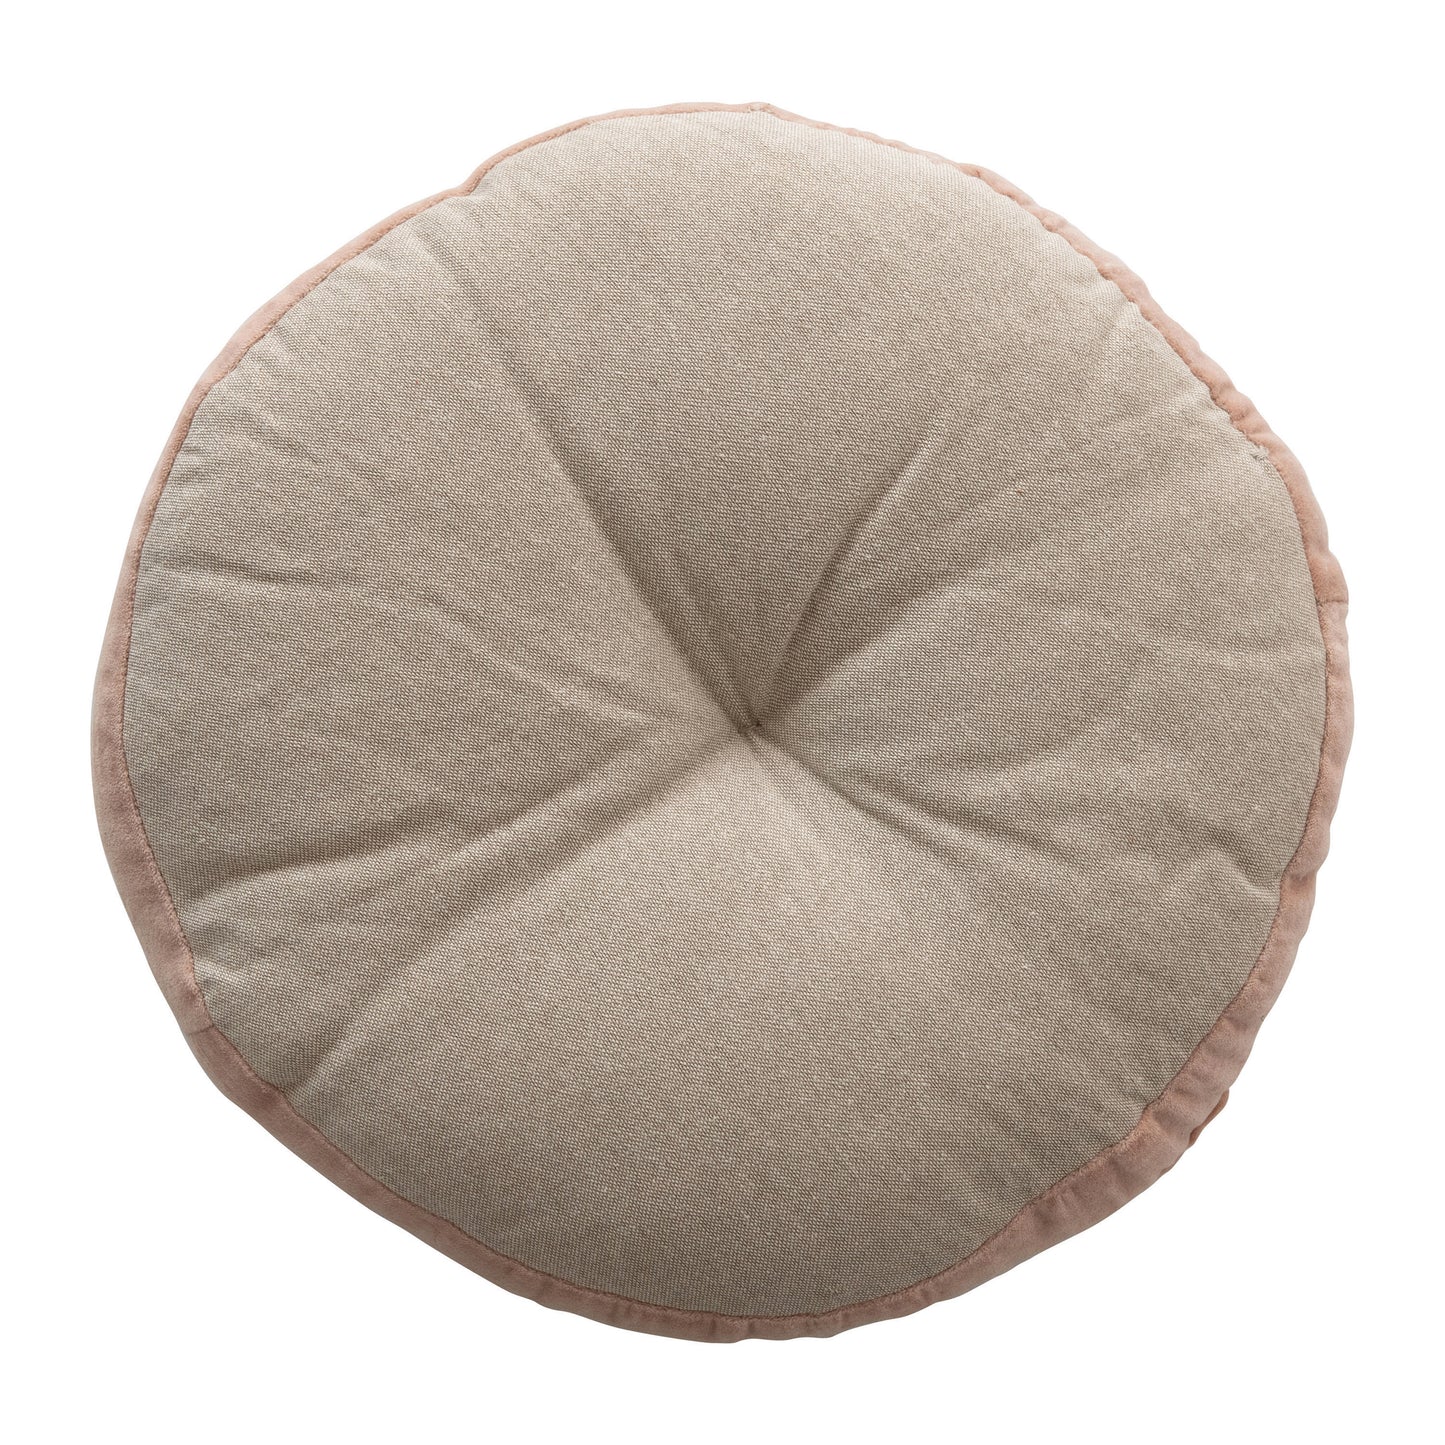 16" Round Cotton Pillow